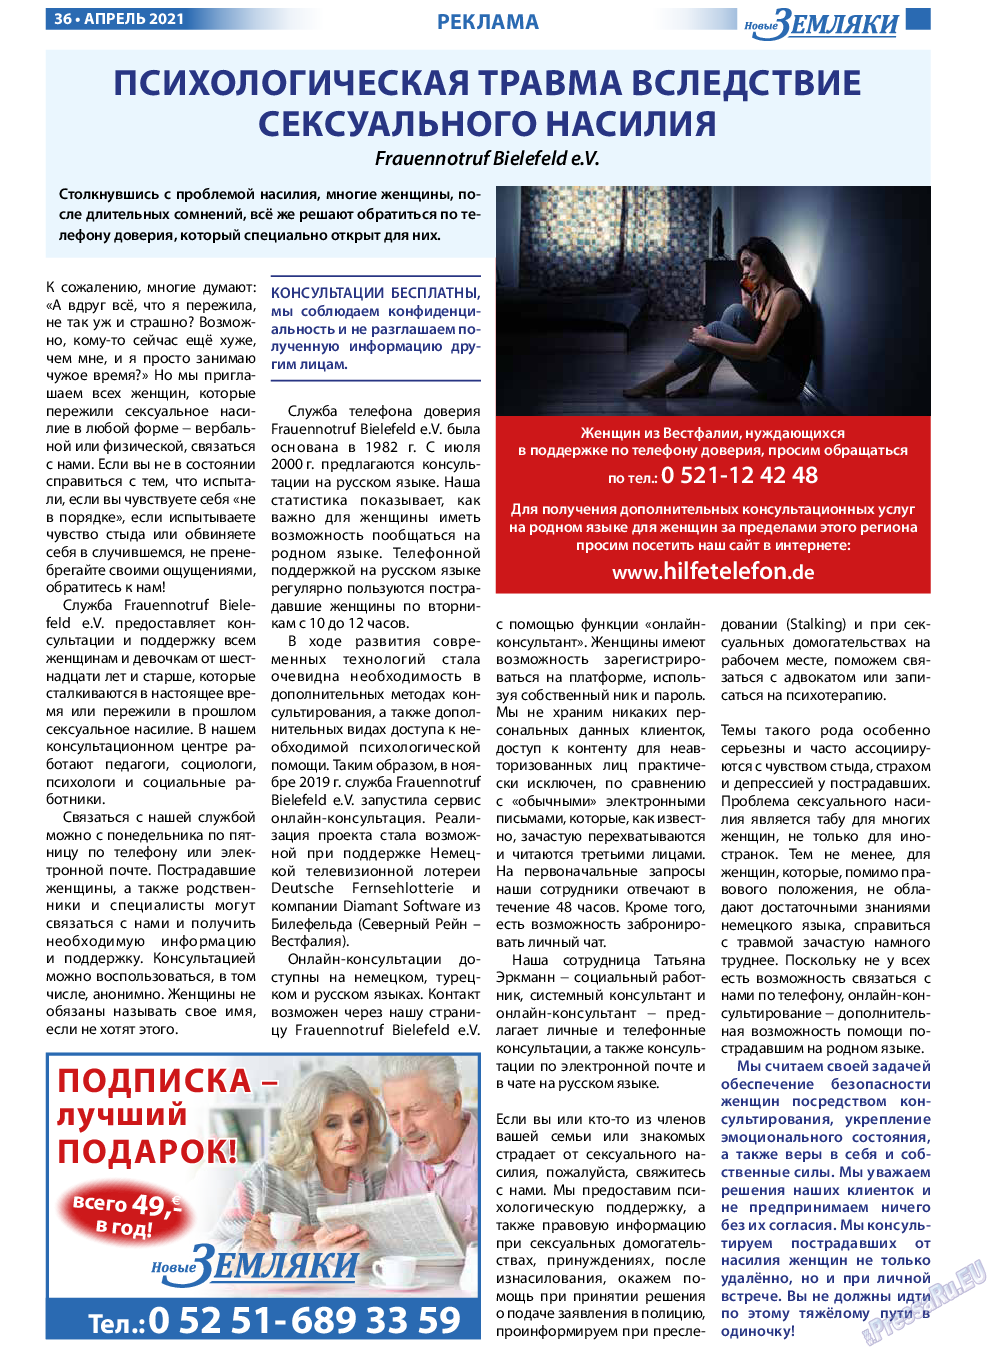 Новые Земляки, газета. 2021 №4 стр.36